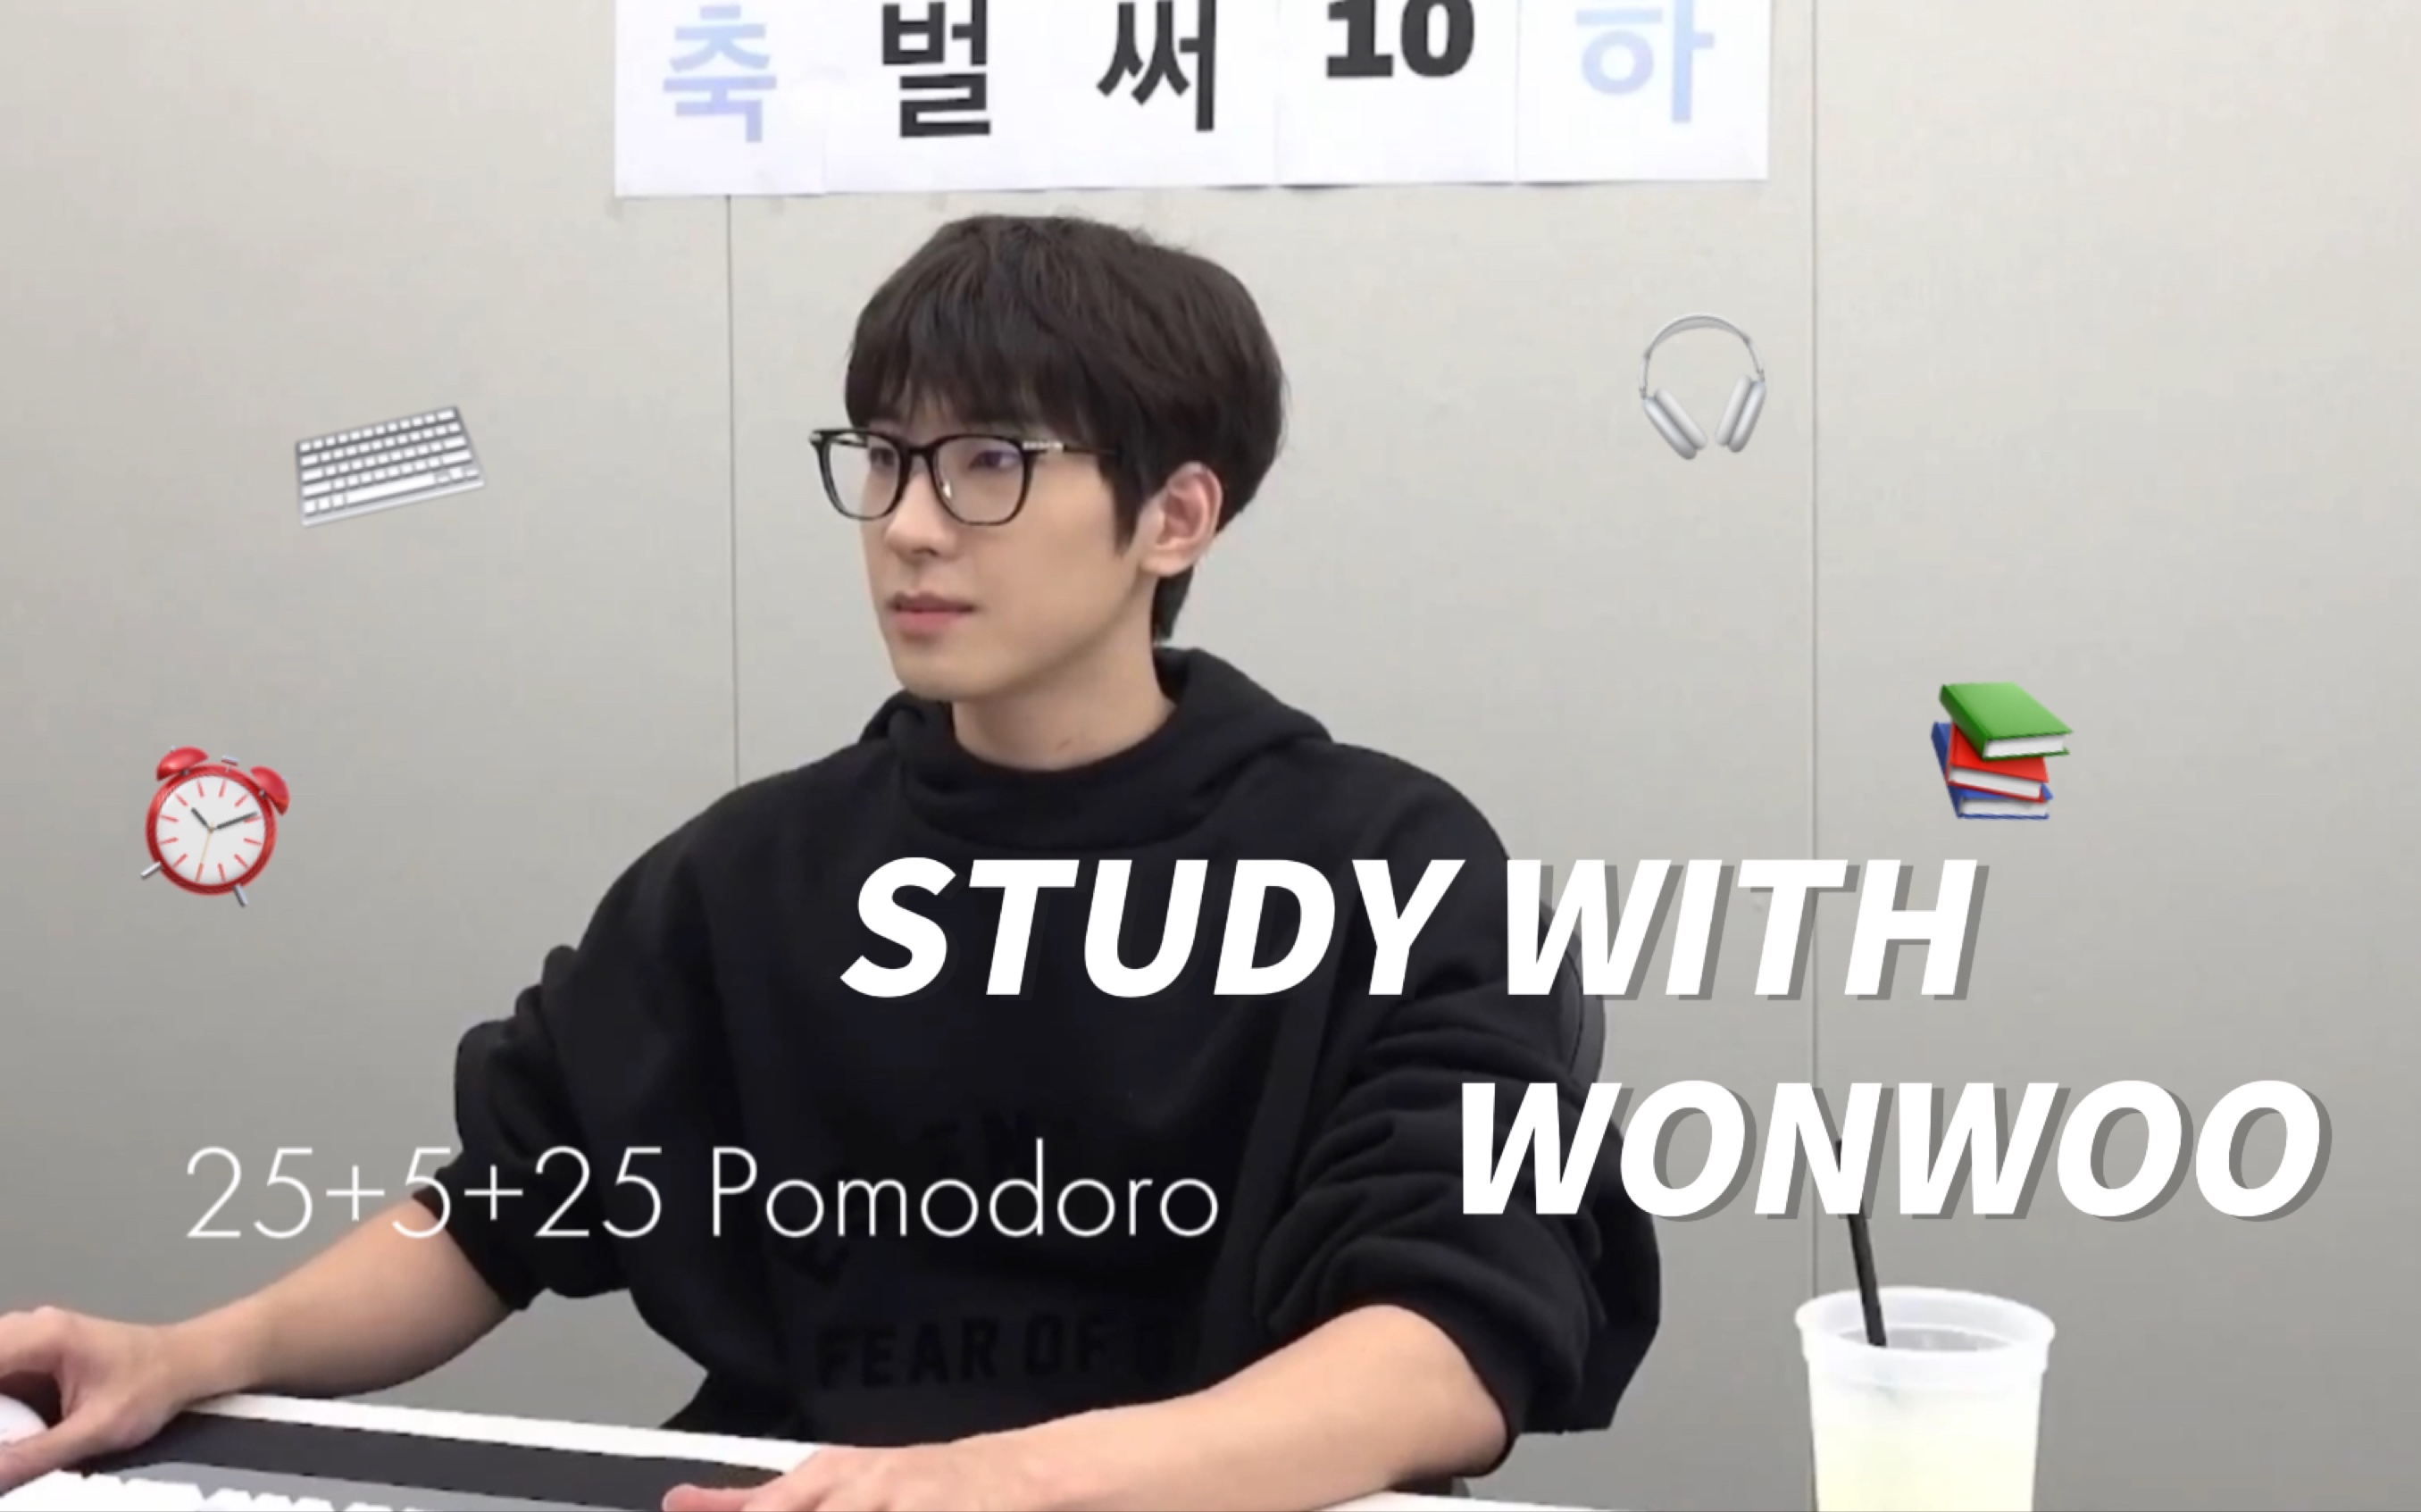 【全圆佑】Study with Wonwoo | 雨天图书馆自习室 | 25+5+25番茄钟 | 白噪音 | 键盘音 | 雨声环境音 | 沉浸式 | 陪伴学习